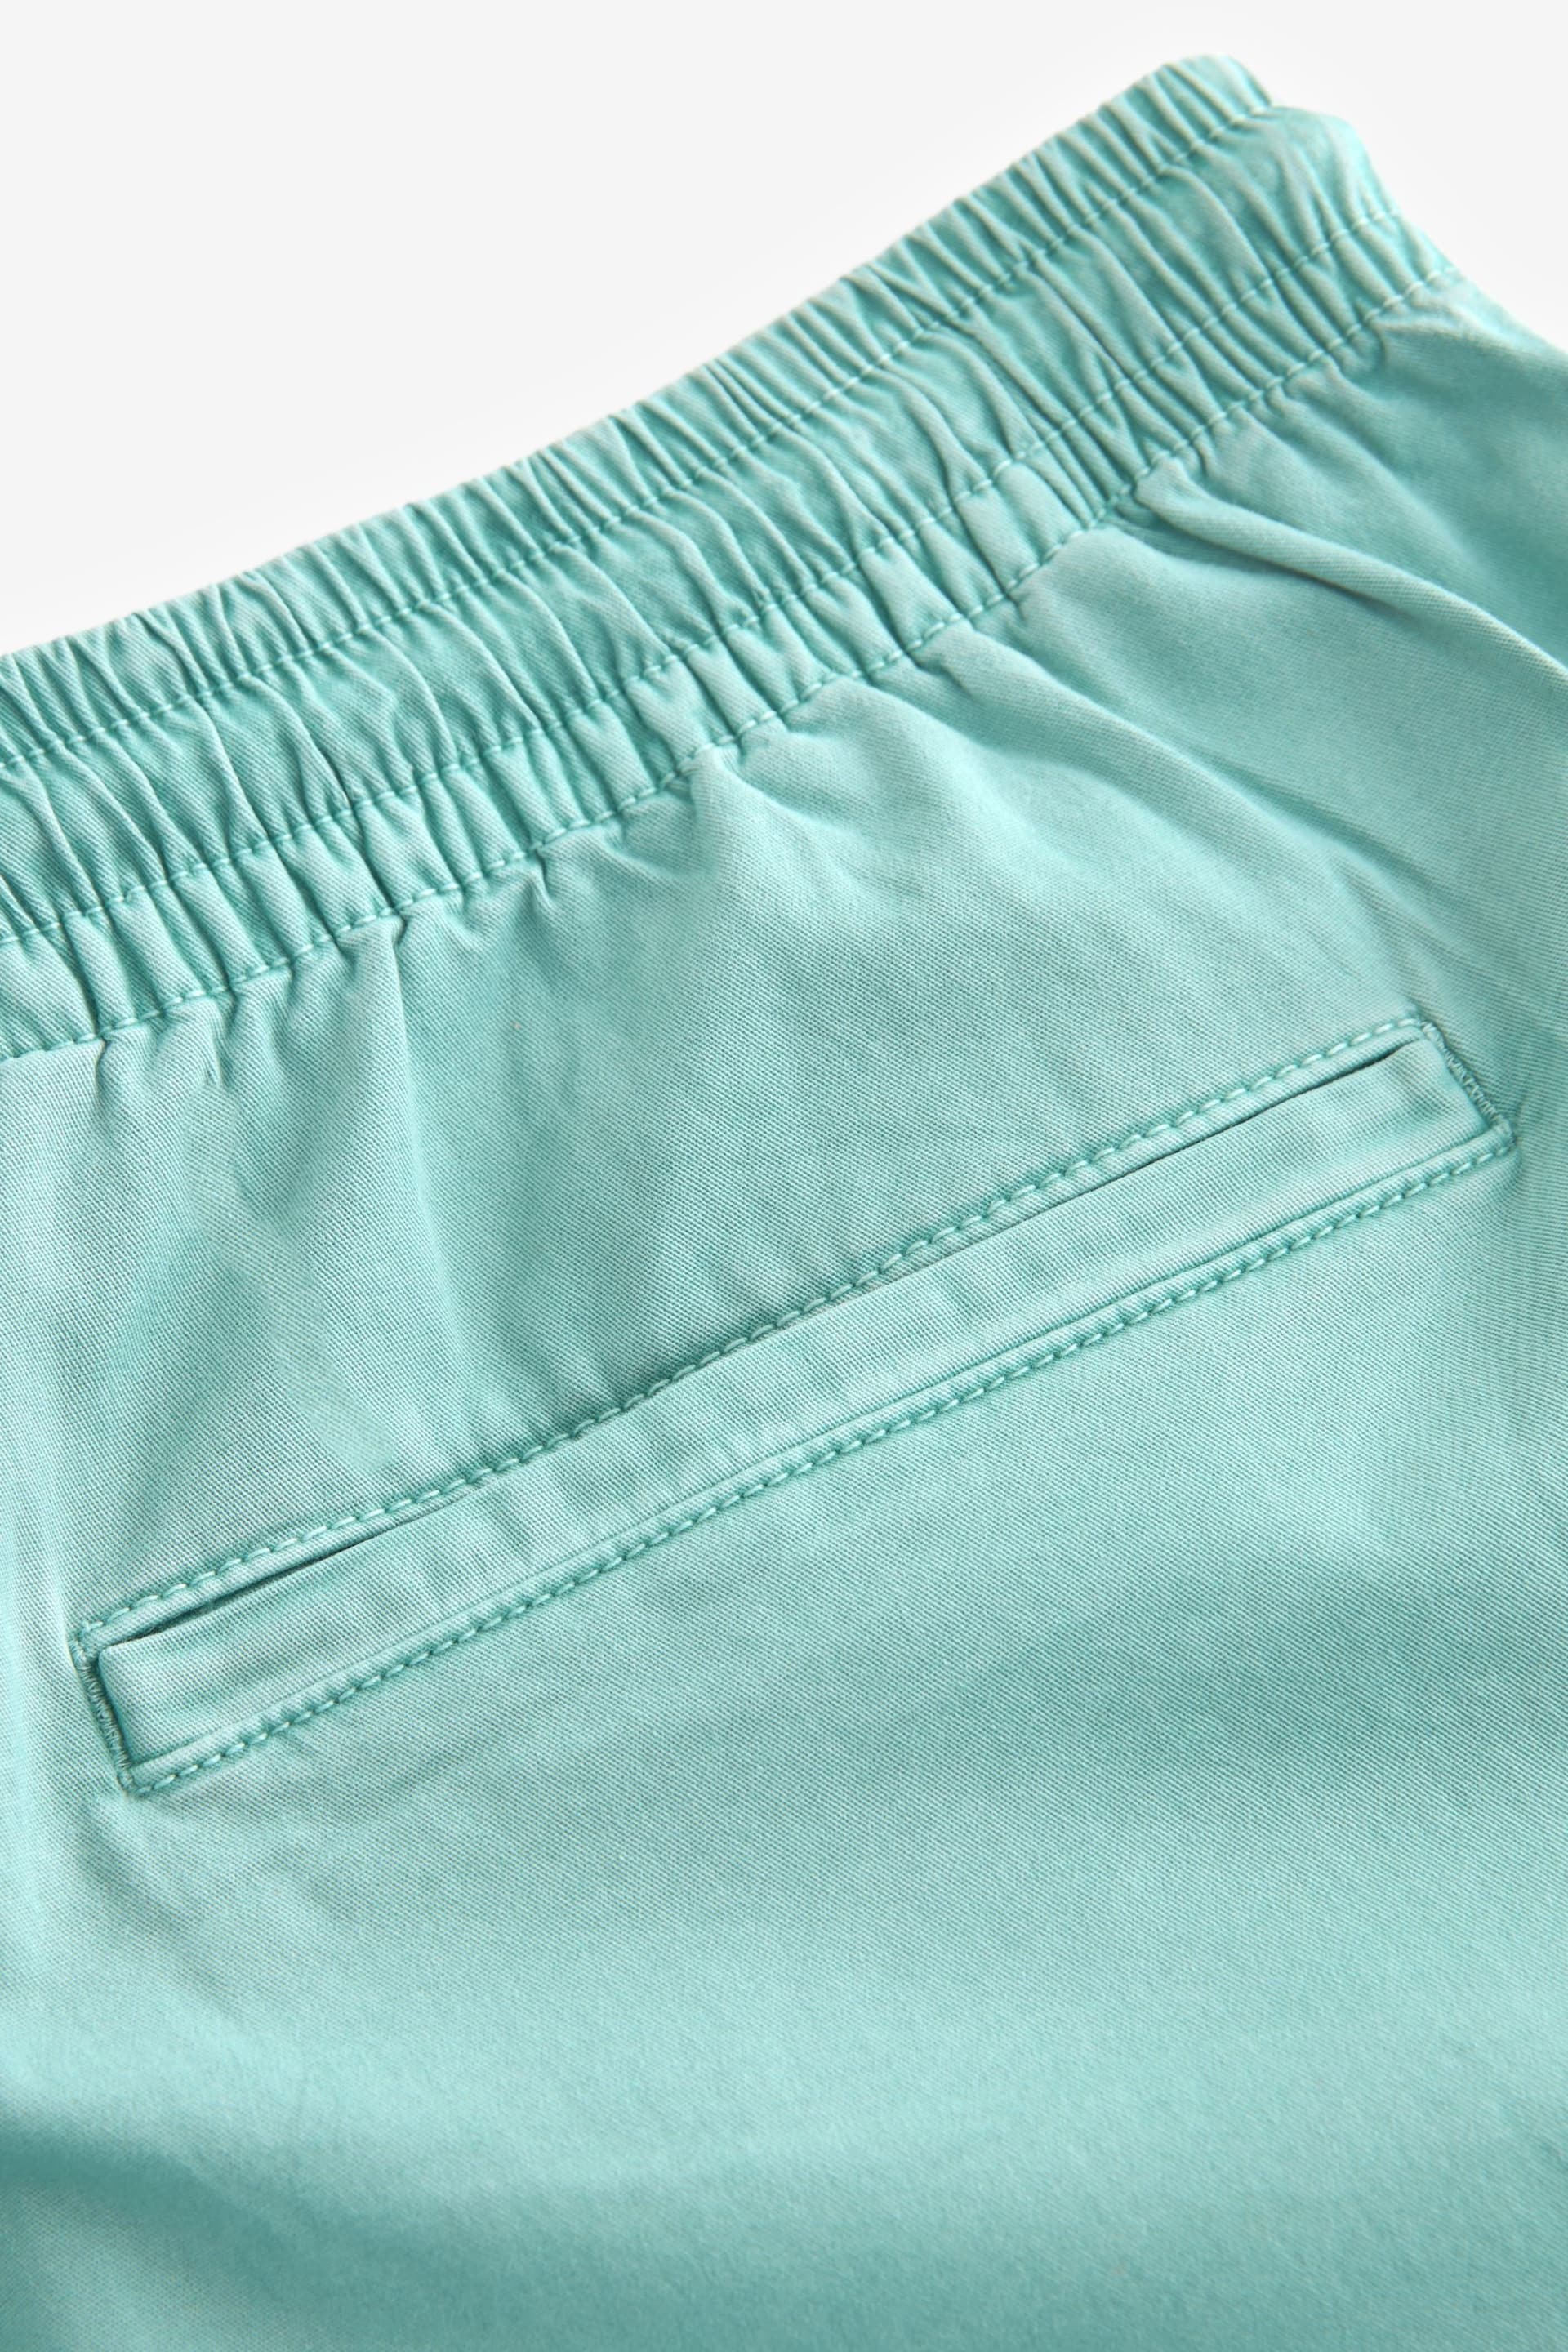 Aqua Blue Washed Cotton Elasticated Waist Shorts - Image 9 of 10